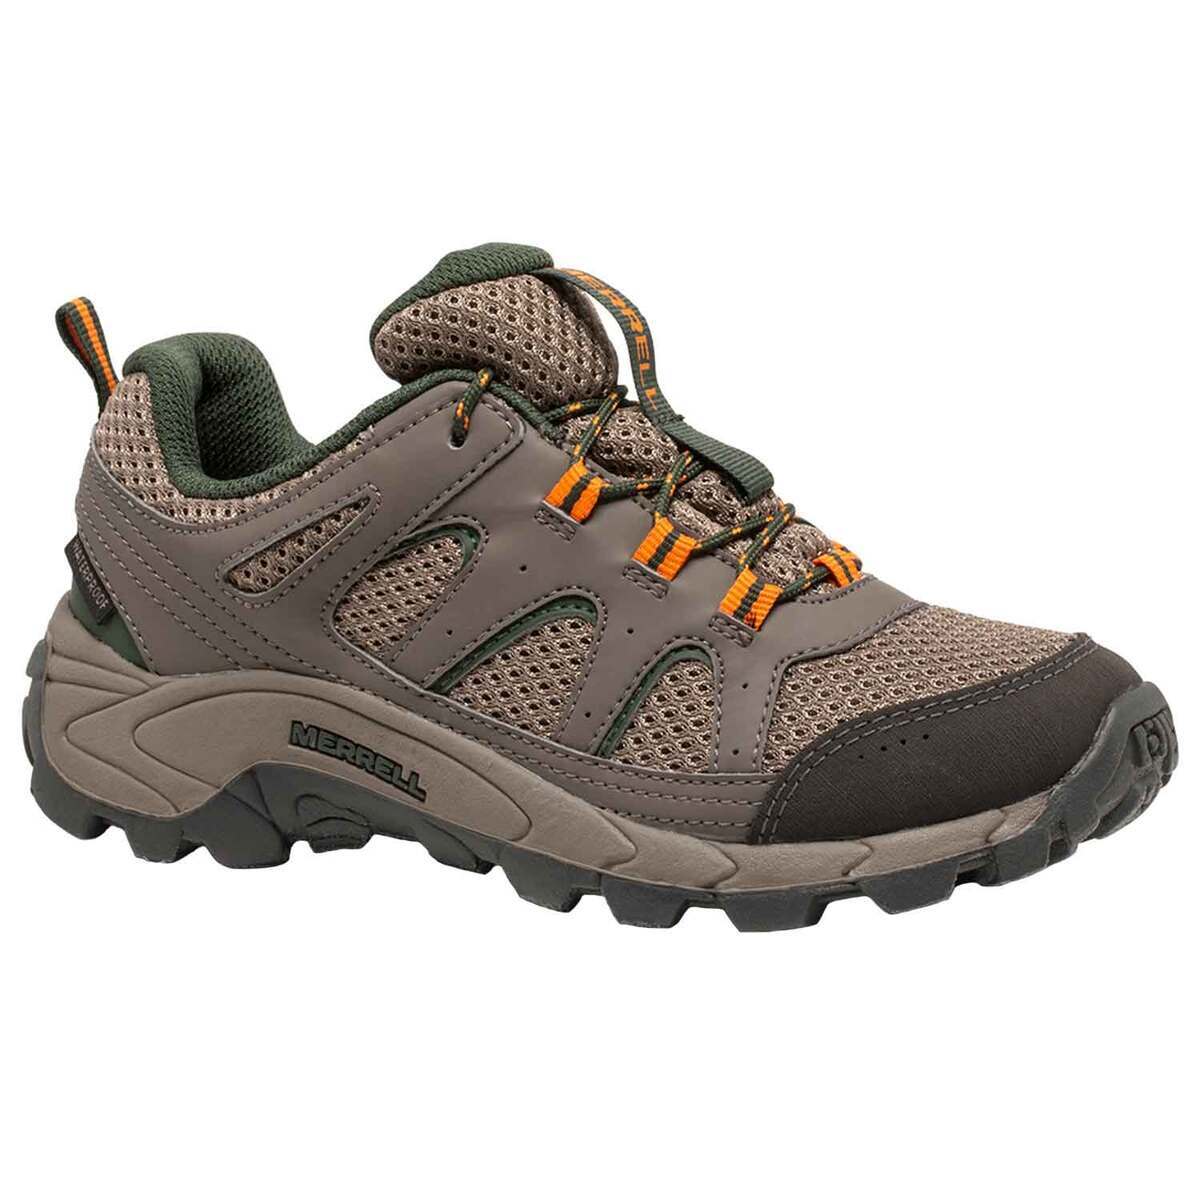 Merrell Youth Oakcreek Waterproof Low Hiking Shoes | Sportsman's Warehouse